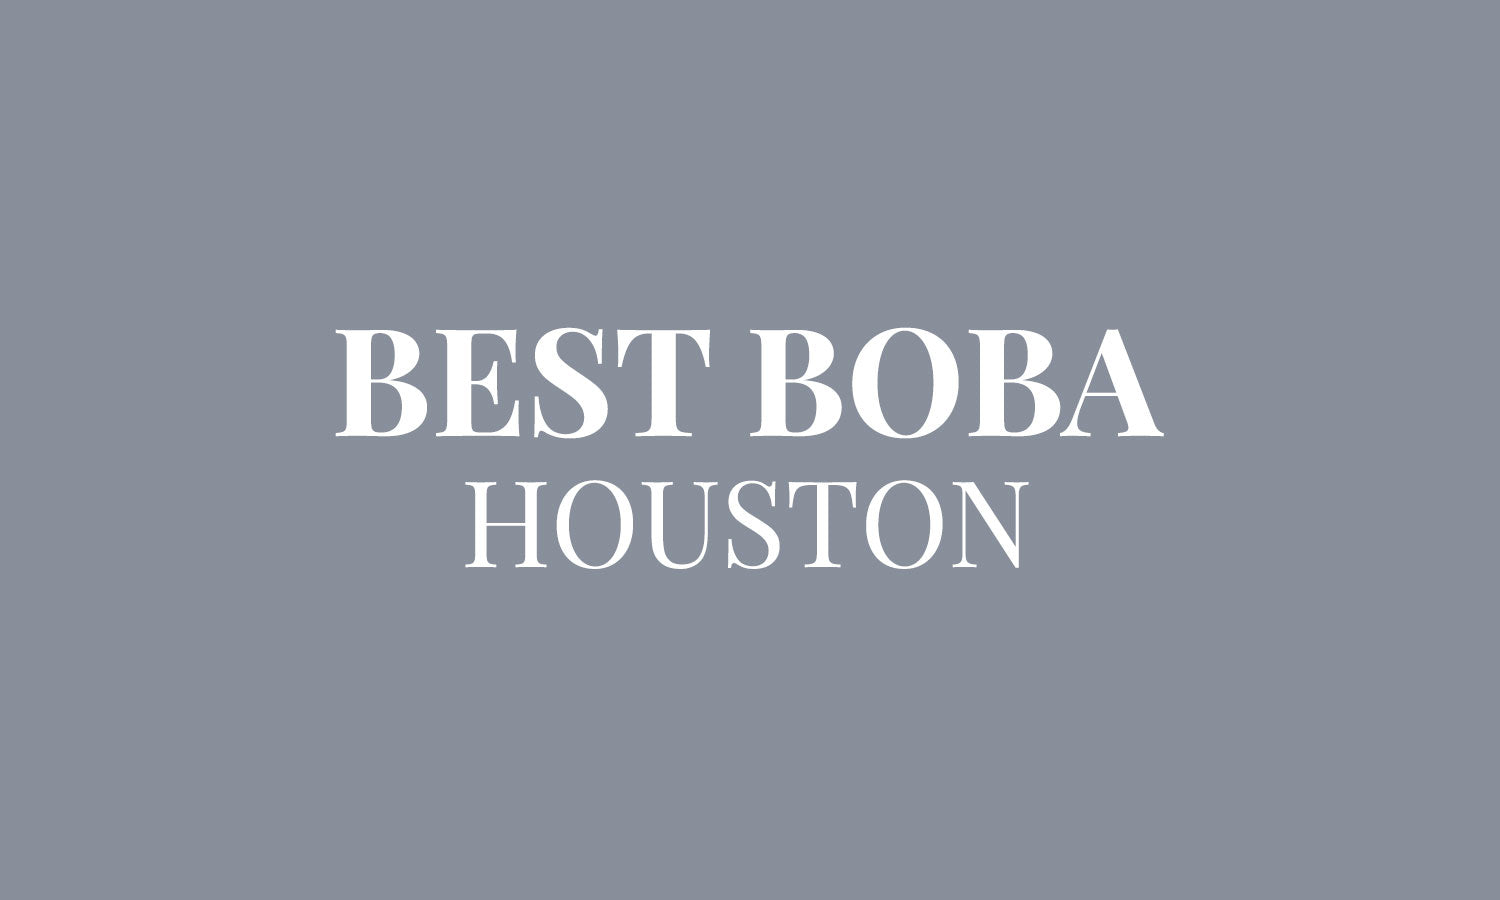 12 Excellent Houston-Area Boba Tea Shops